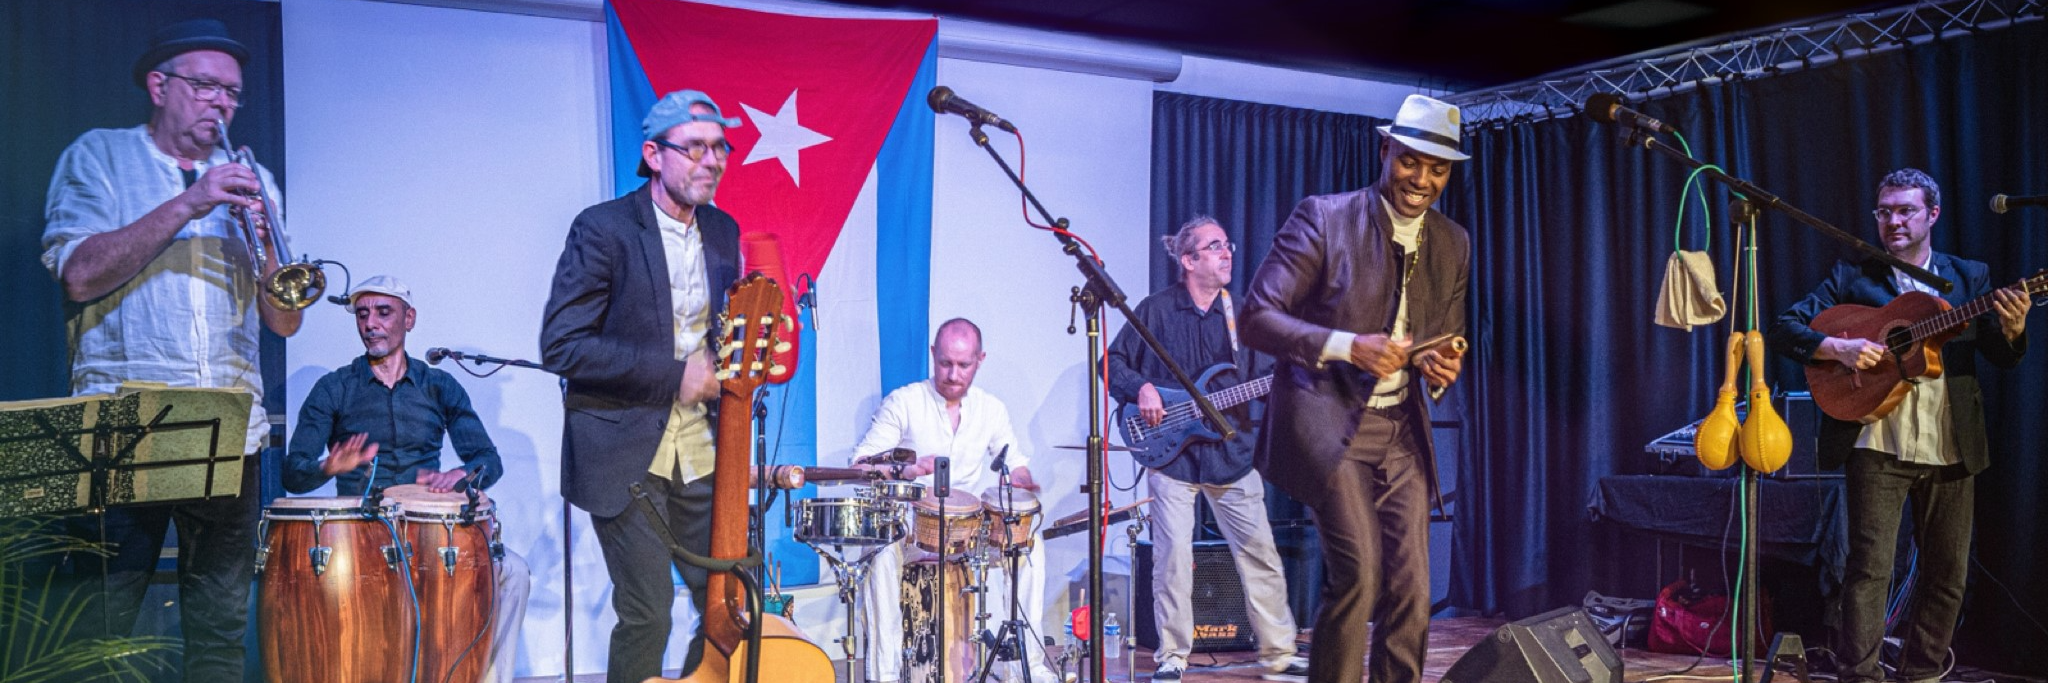 Rayo de Son, groupe de musique Musique Cubaine en représentation à Nord - photo de couverture n° 1